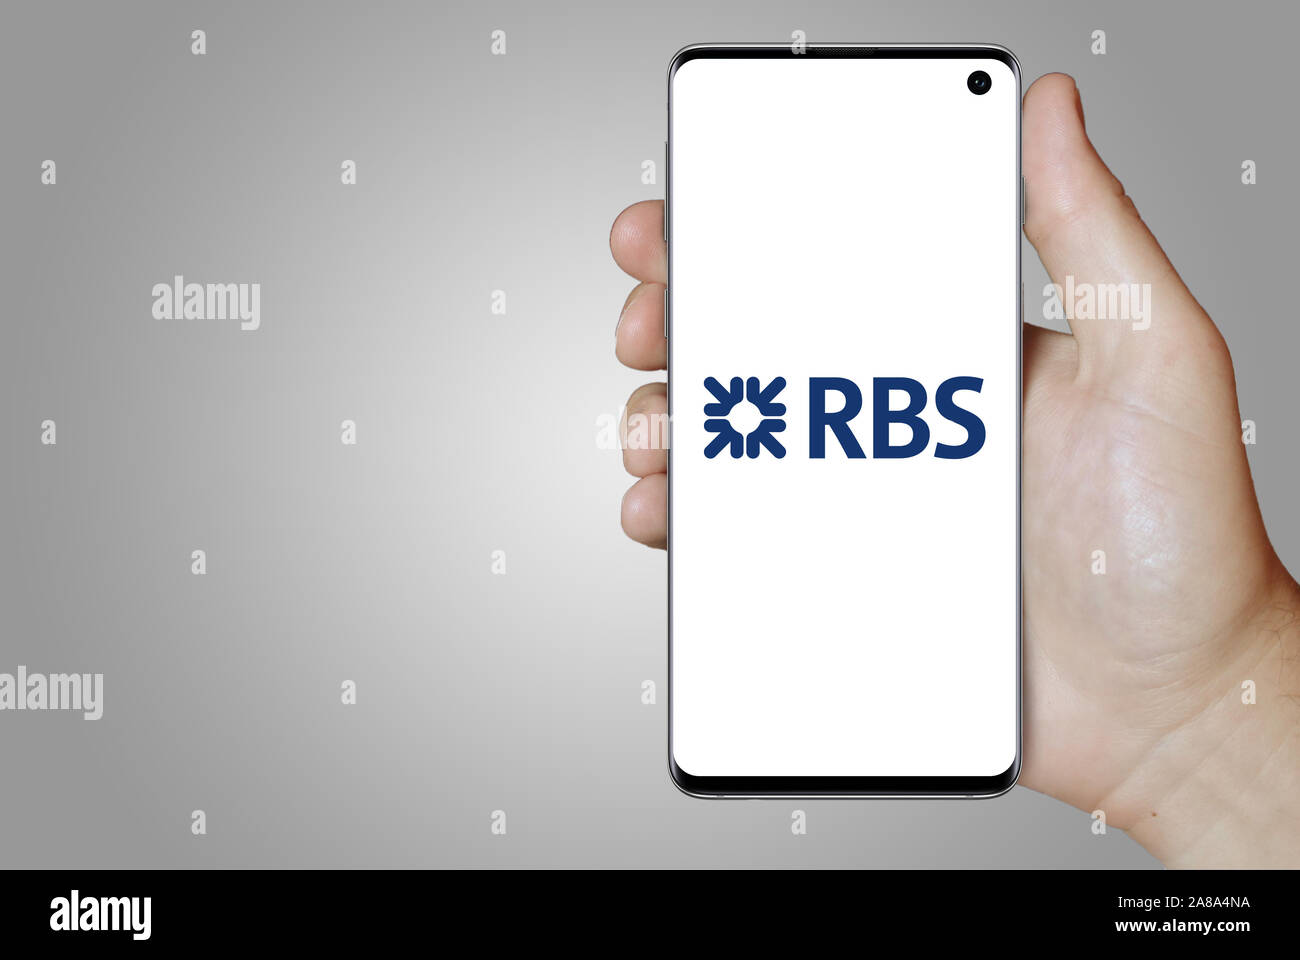 Logo de compagnie publique Royal Bank of Scotland Group affiche sur un smartphone. Fond gris. Credit : PIXDUCE Banque D'Images